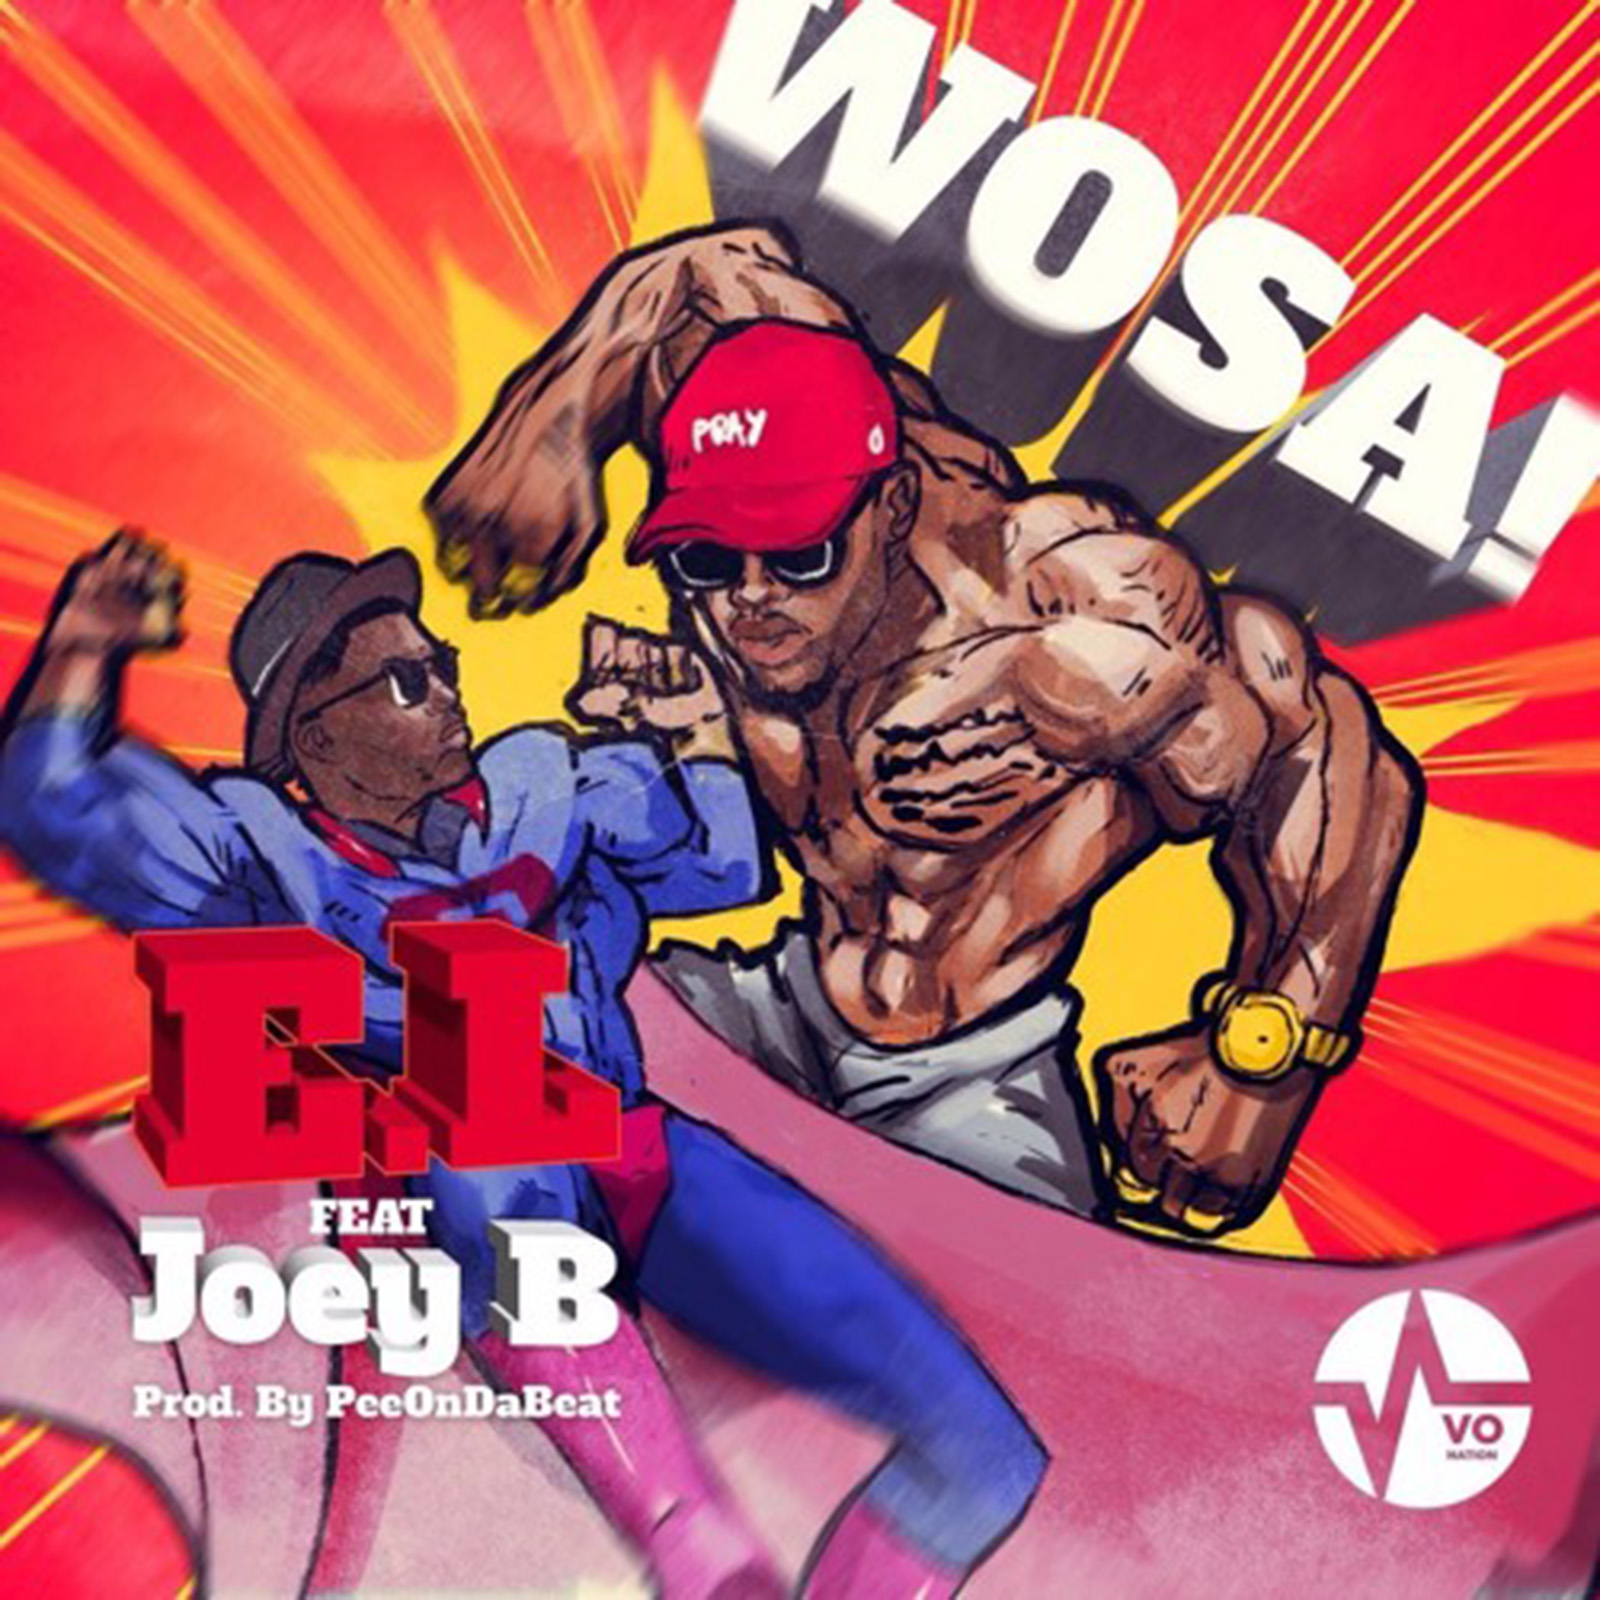 Wosa by E.L feat. Joey B